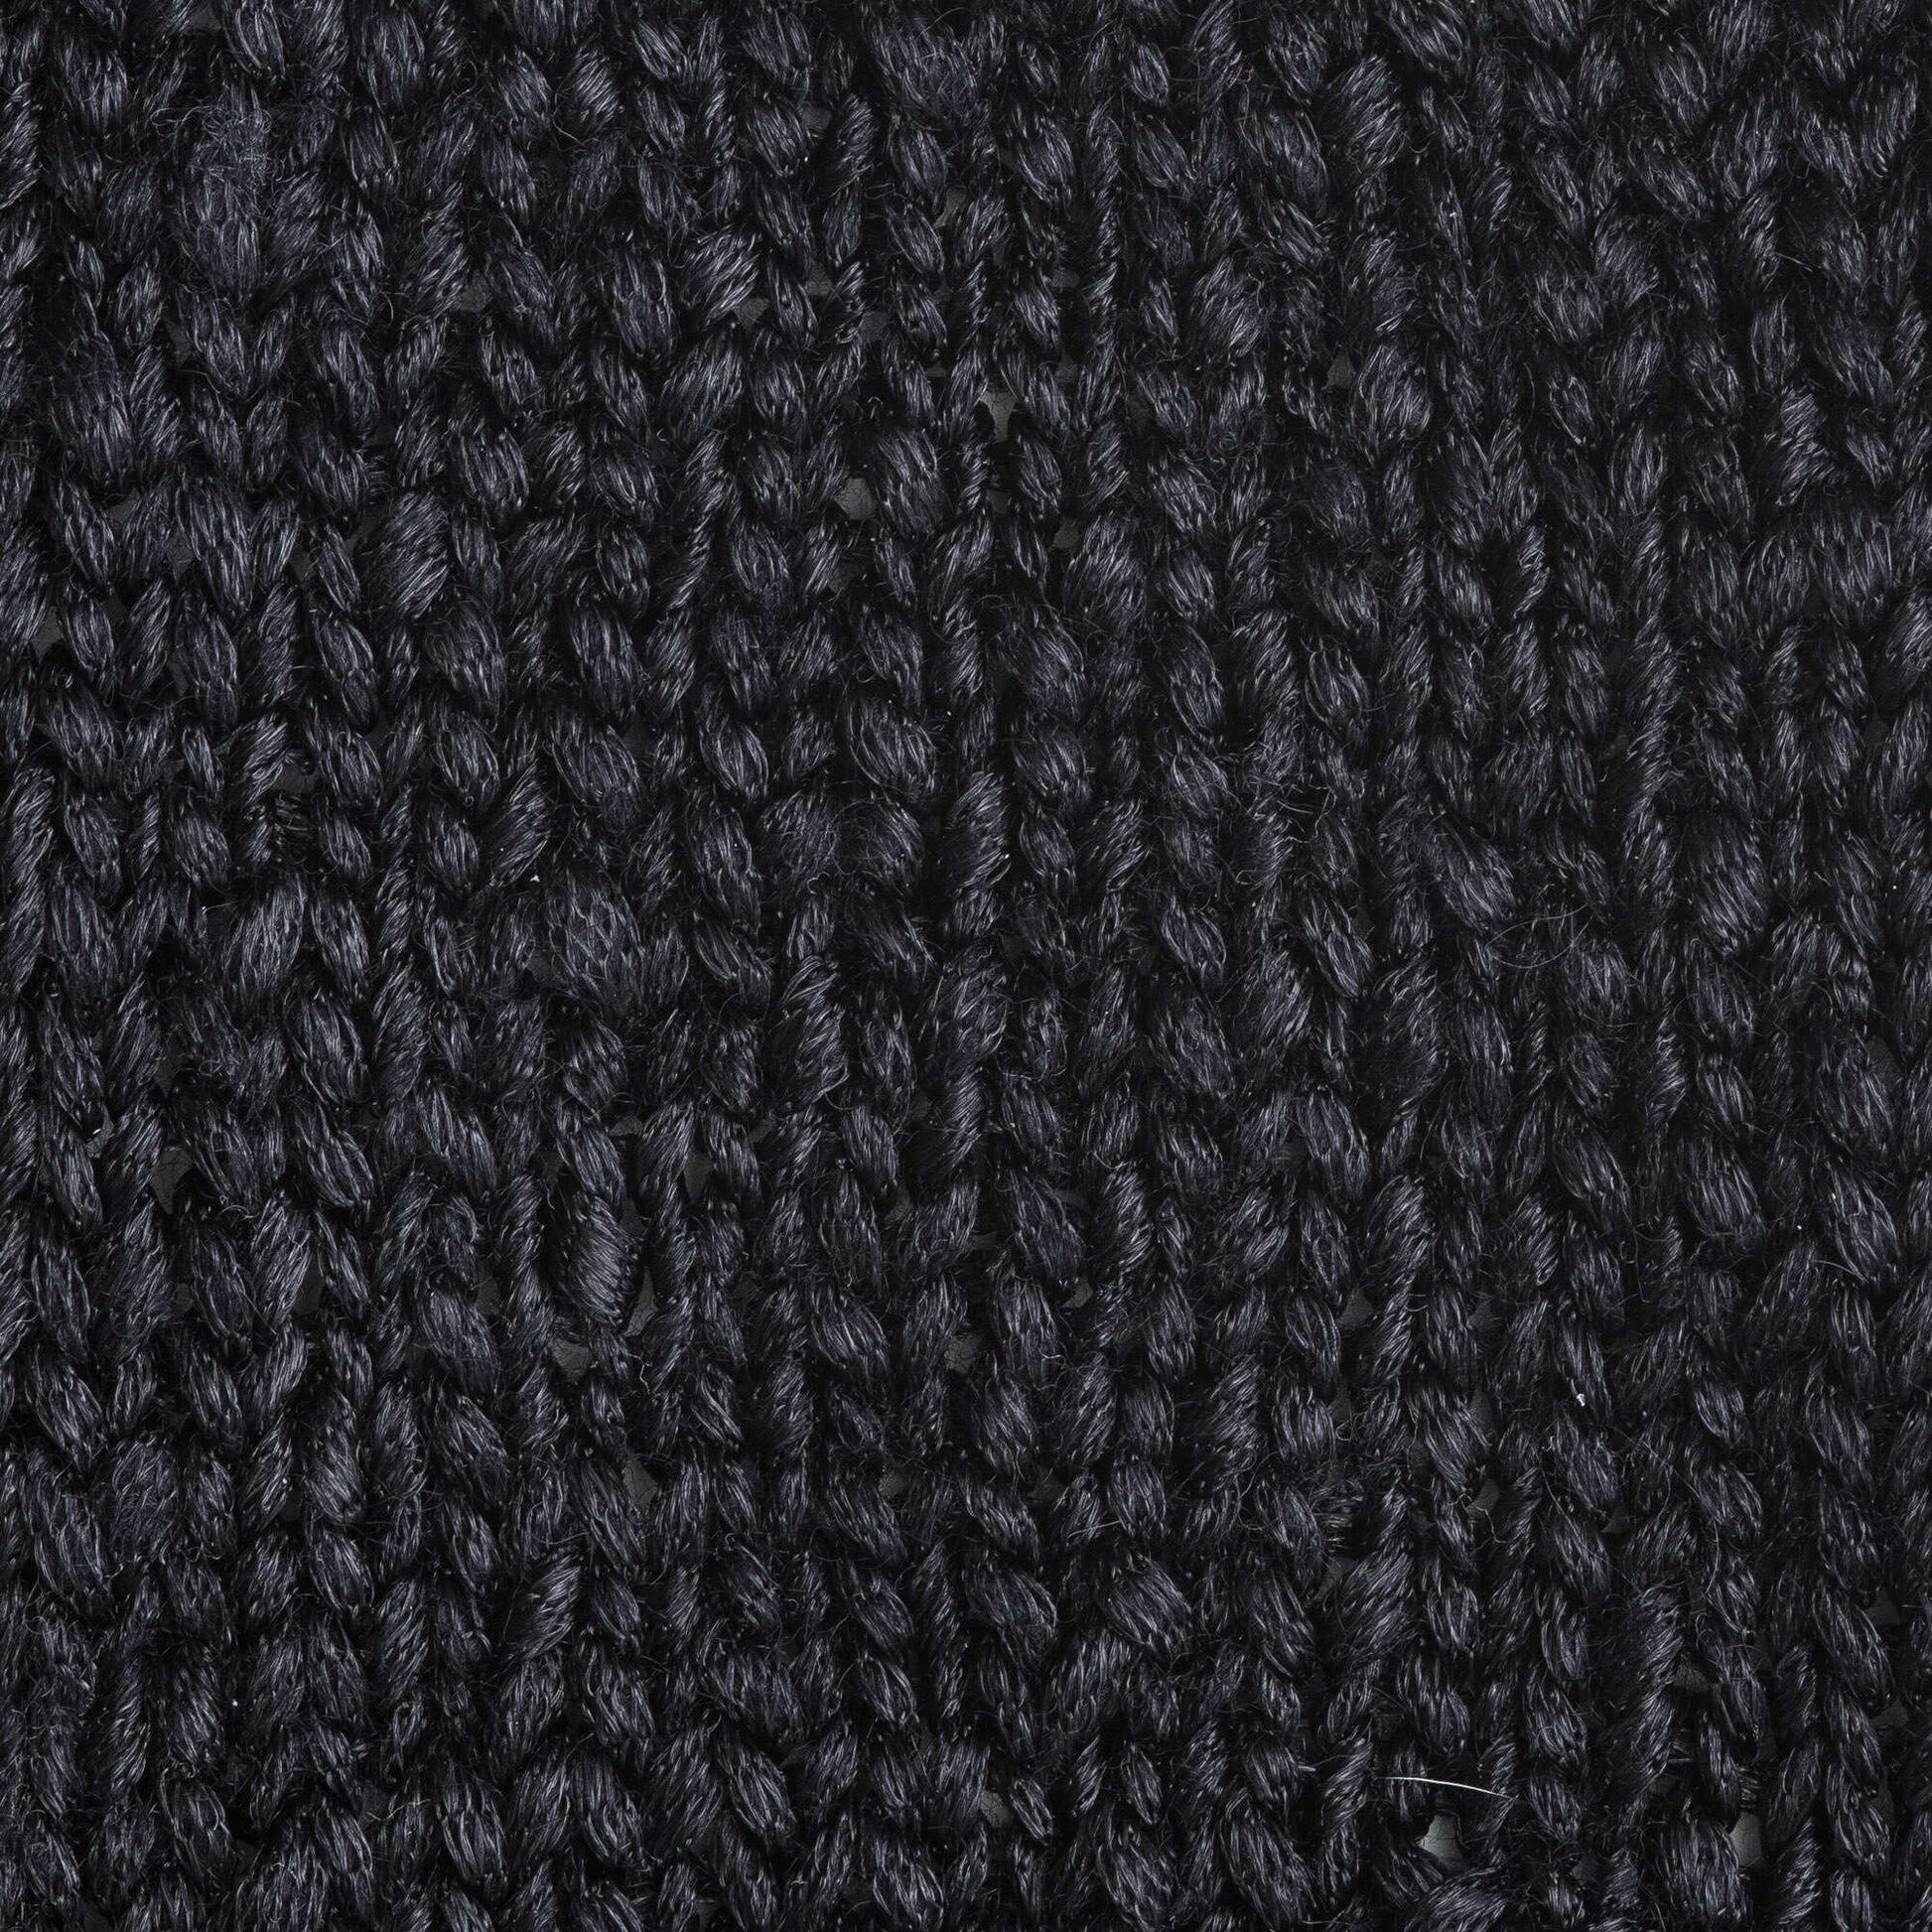 Paton's White Gold Metallic Yarn Knit Crochet 09008 Yarnspirations 2.1 oz  NEW